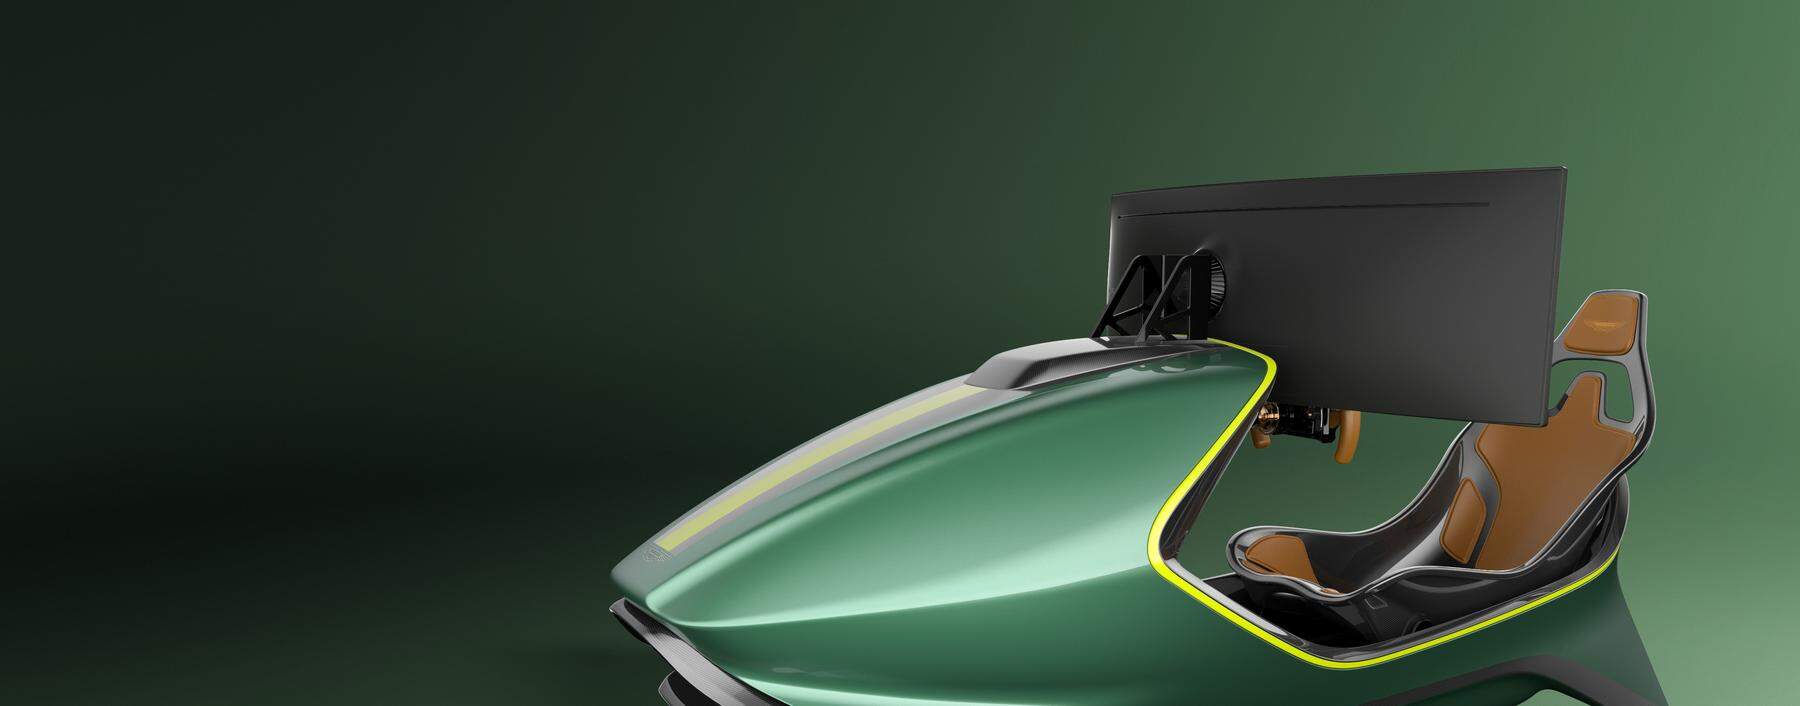 Schönes Weihnachtsgeschenk, bloß nicht ganz wohlfeil: Der von Aston Martin und Curv entwickelte Racing-Simulator kostet ab 80.000 Euro. 